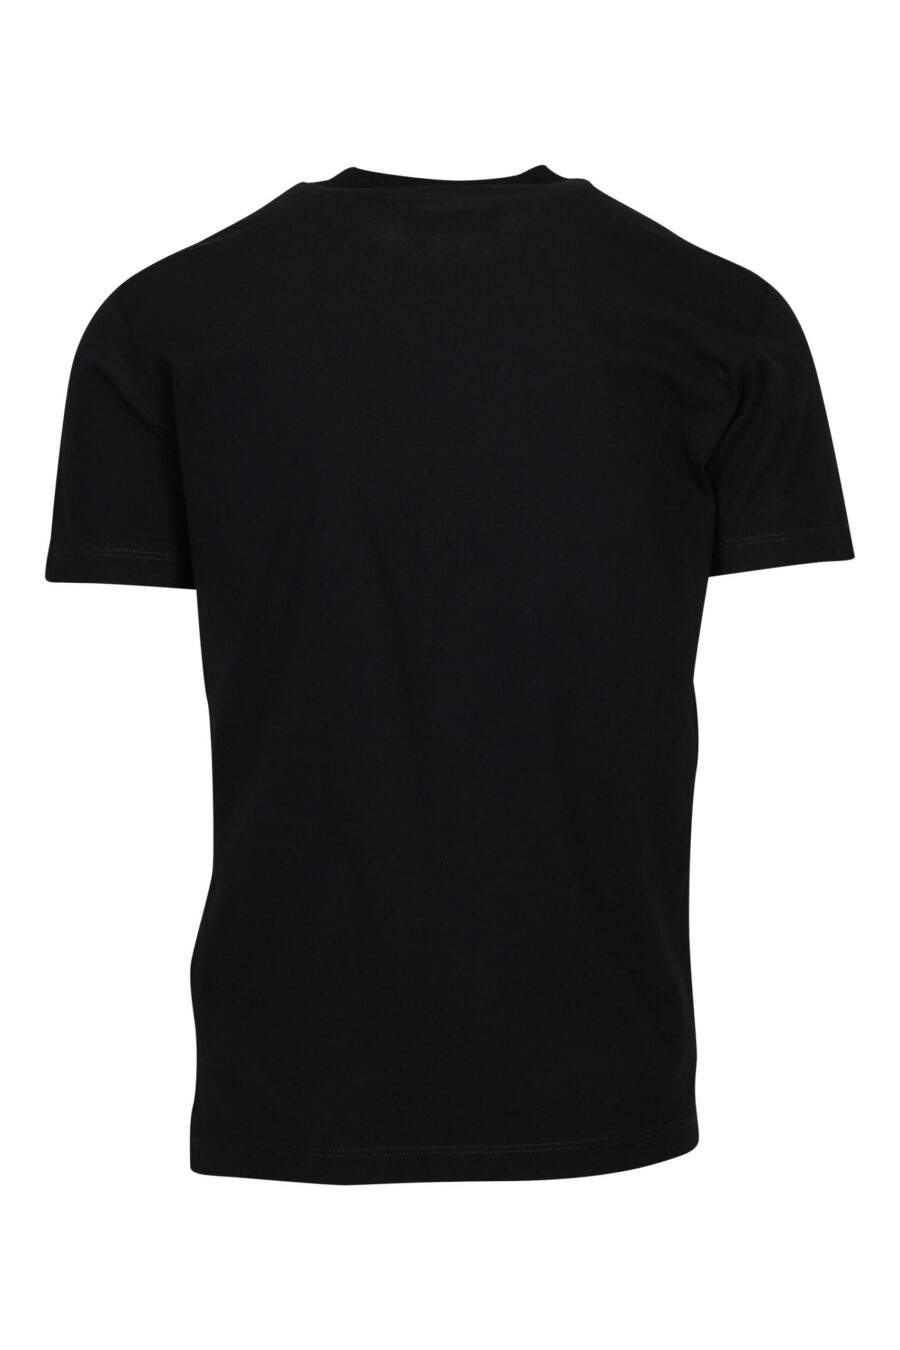 T-shirt noir avec logo "milano" plié - 8054148571047 1 scaled